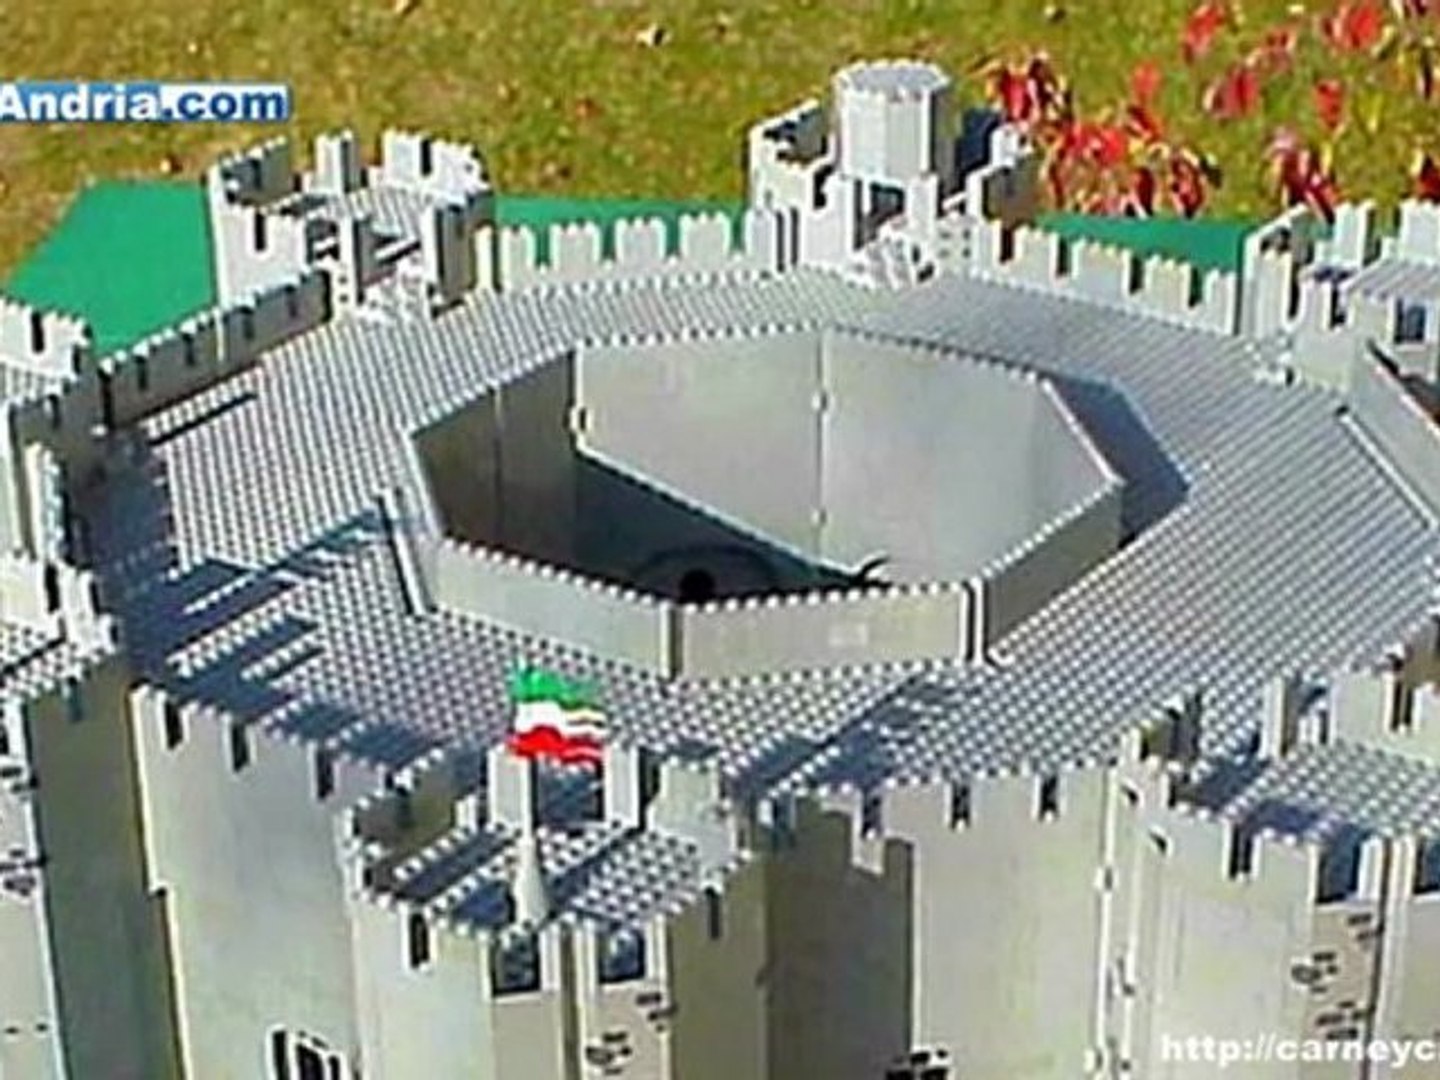 Il Castel del Monte costruito con mattoncini LEGO (Castle of the Mount in  LEGO bricks) - Video Dailymotion